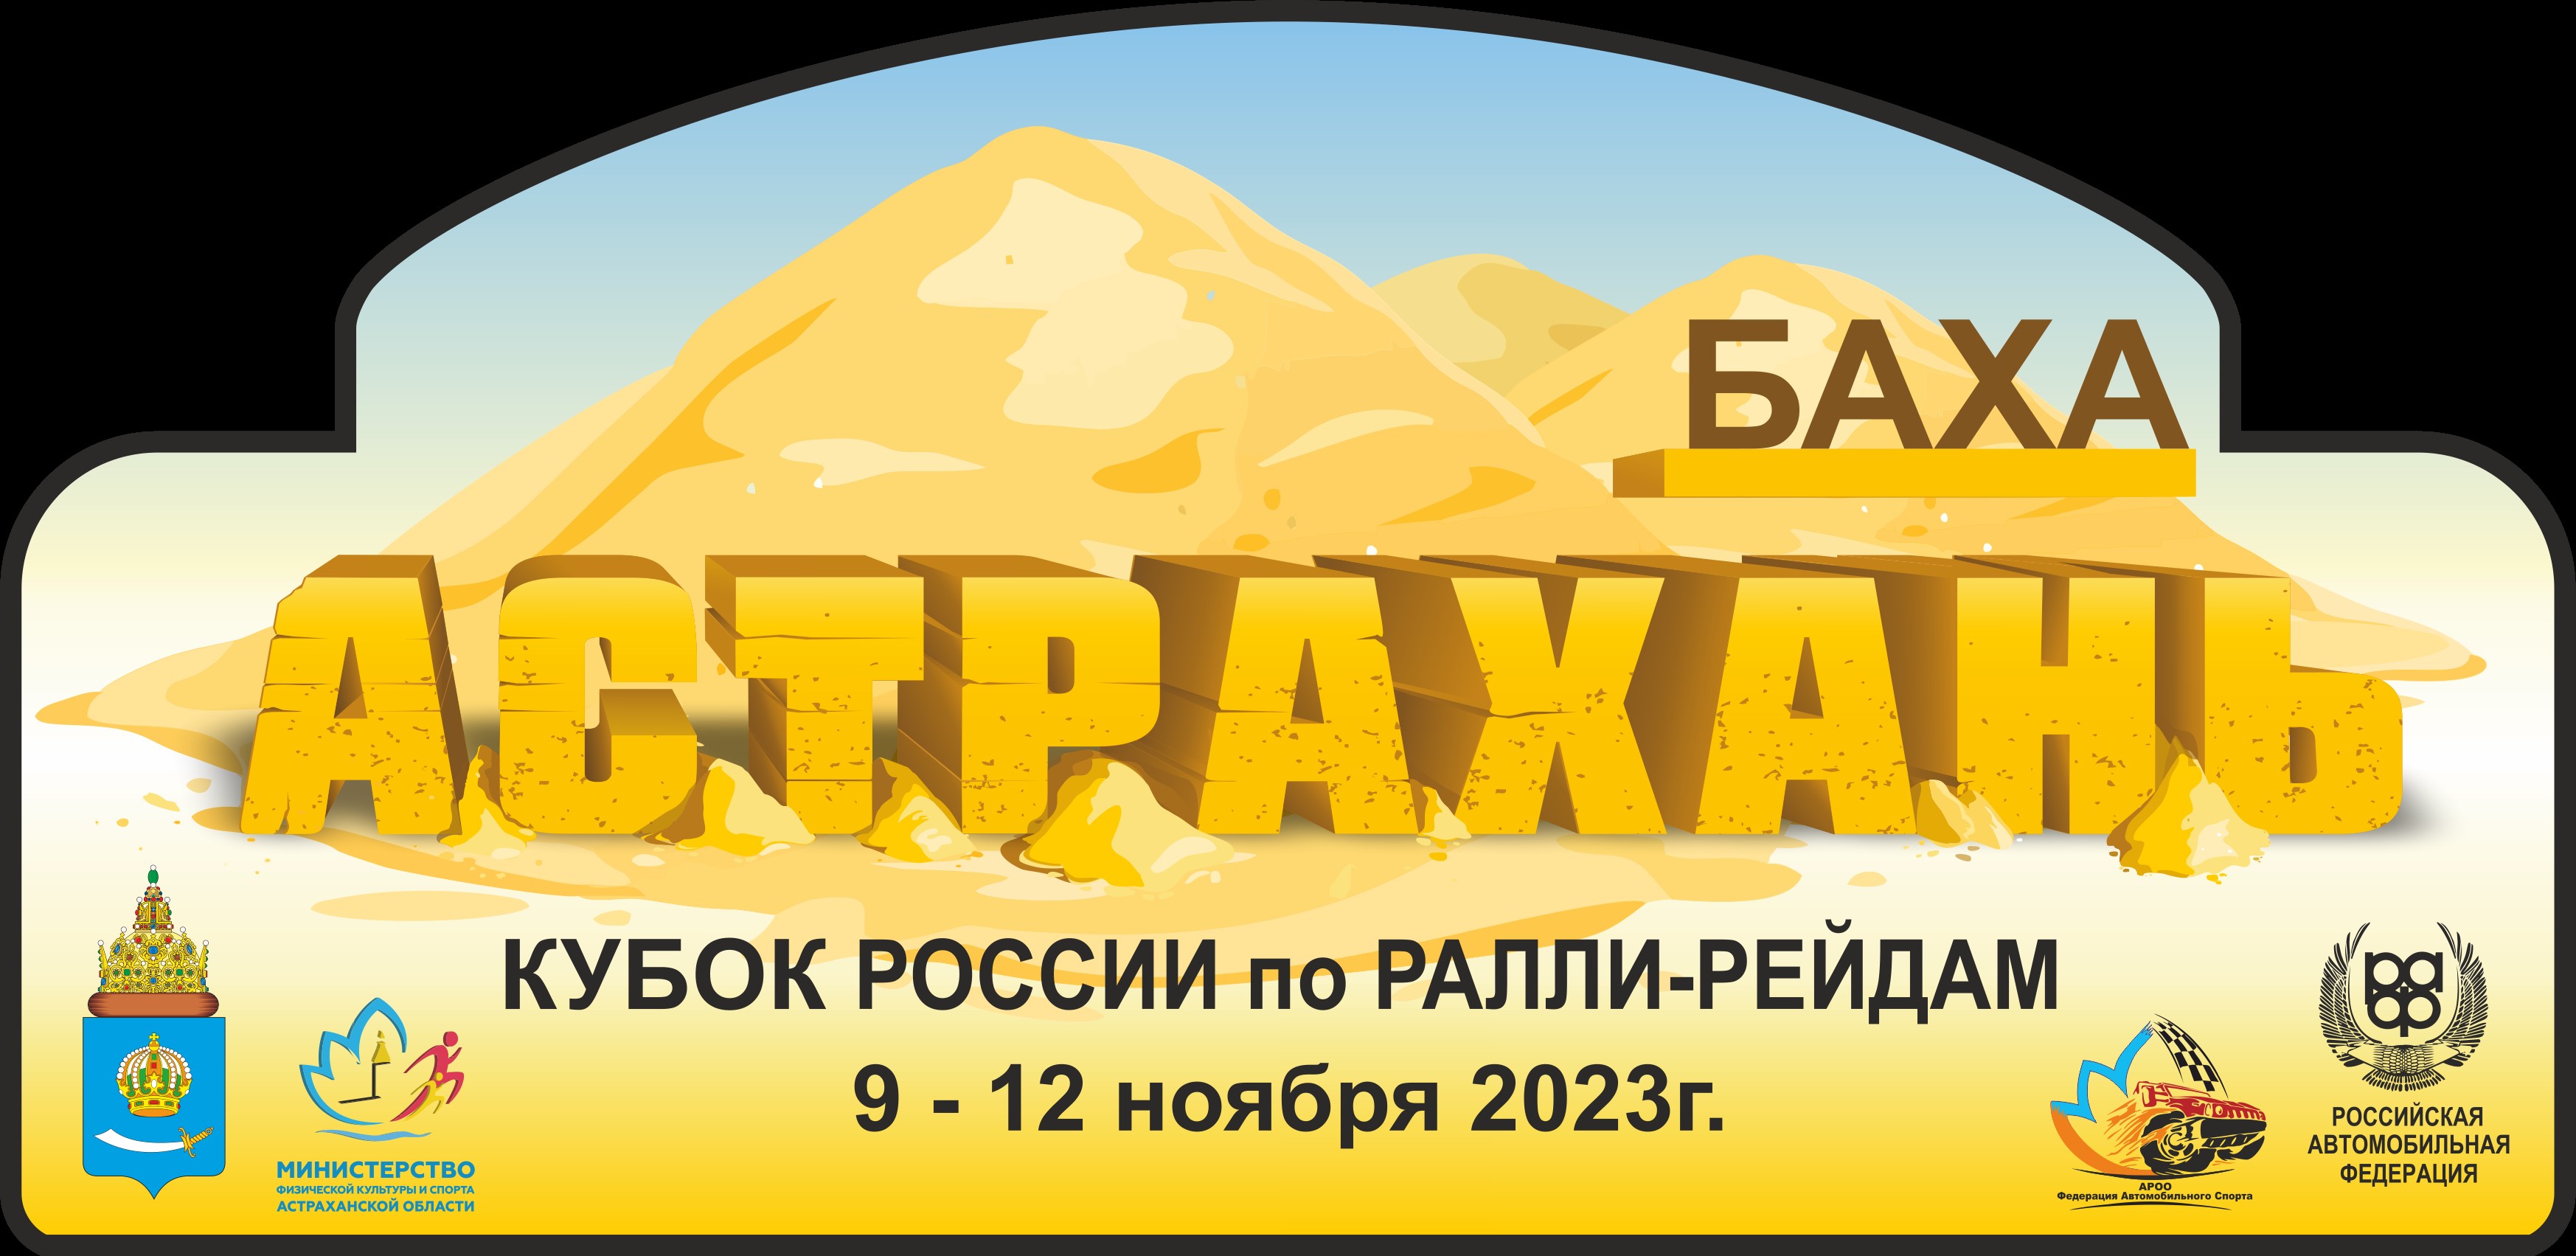 Опубликован список участников бахи "Астрахань — 2023"